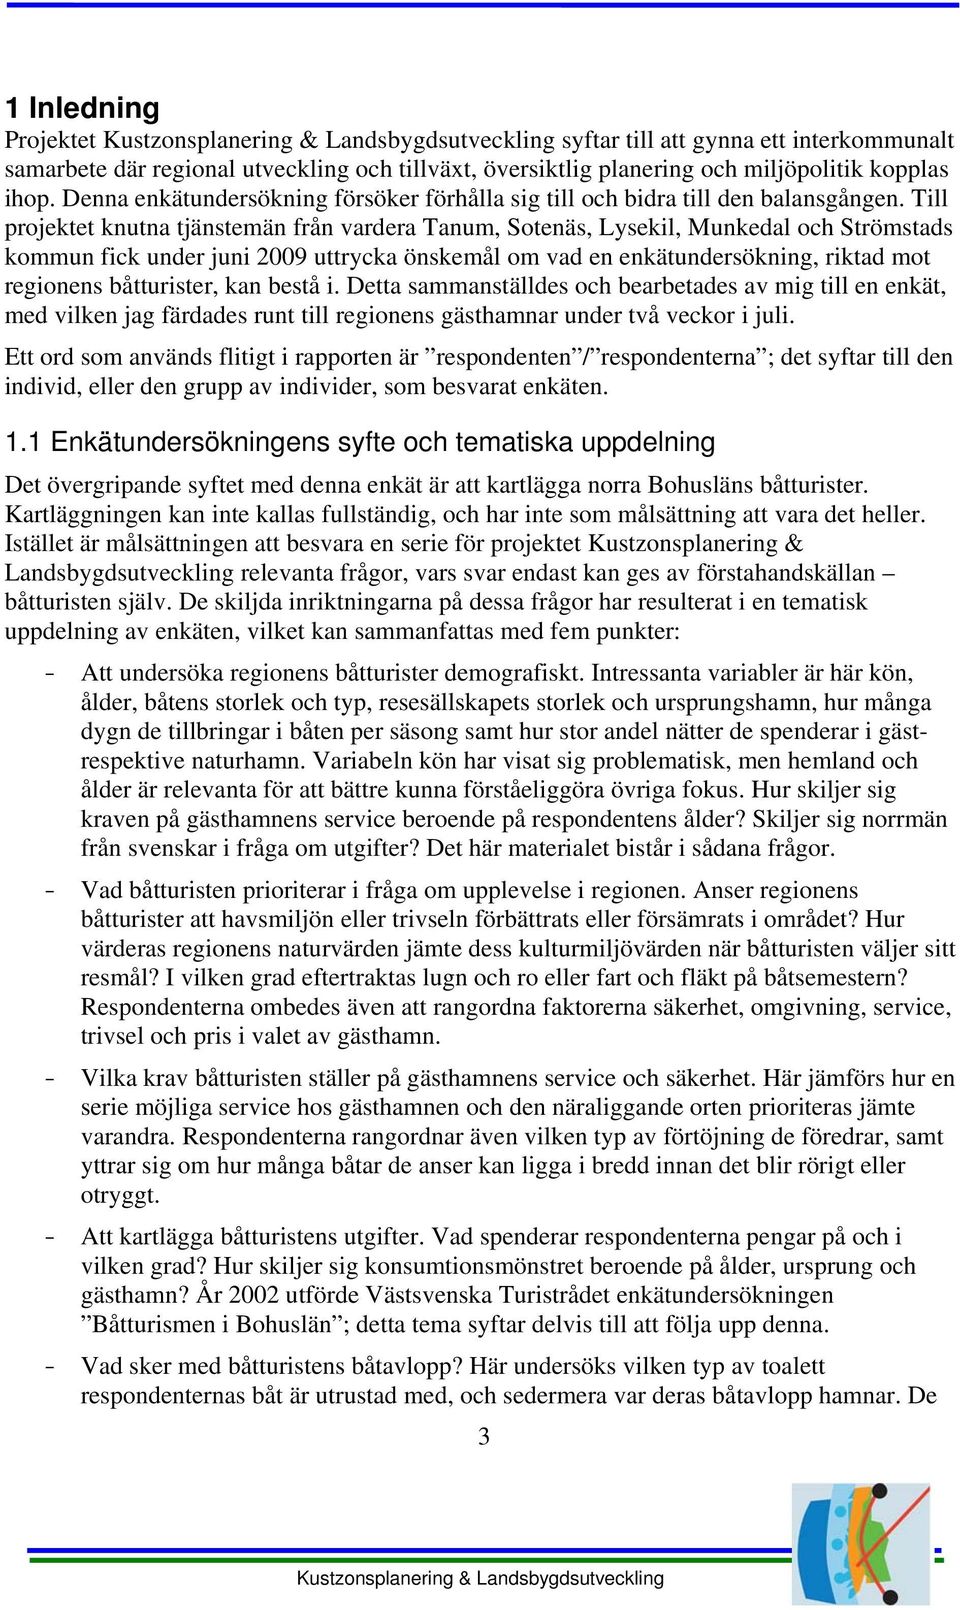 Till projektet knutna tjänstemän från vardera Tanum, Sotenäs, Lysekil, Munkedal och Strömstads kommun fick under juni 2009 uttrycka önskemål om vad en enkätundersökning, riktad mot regionens